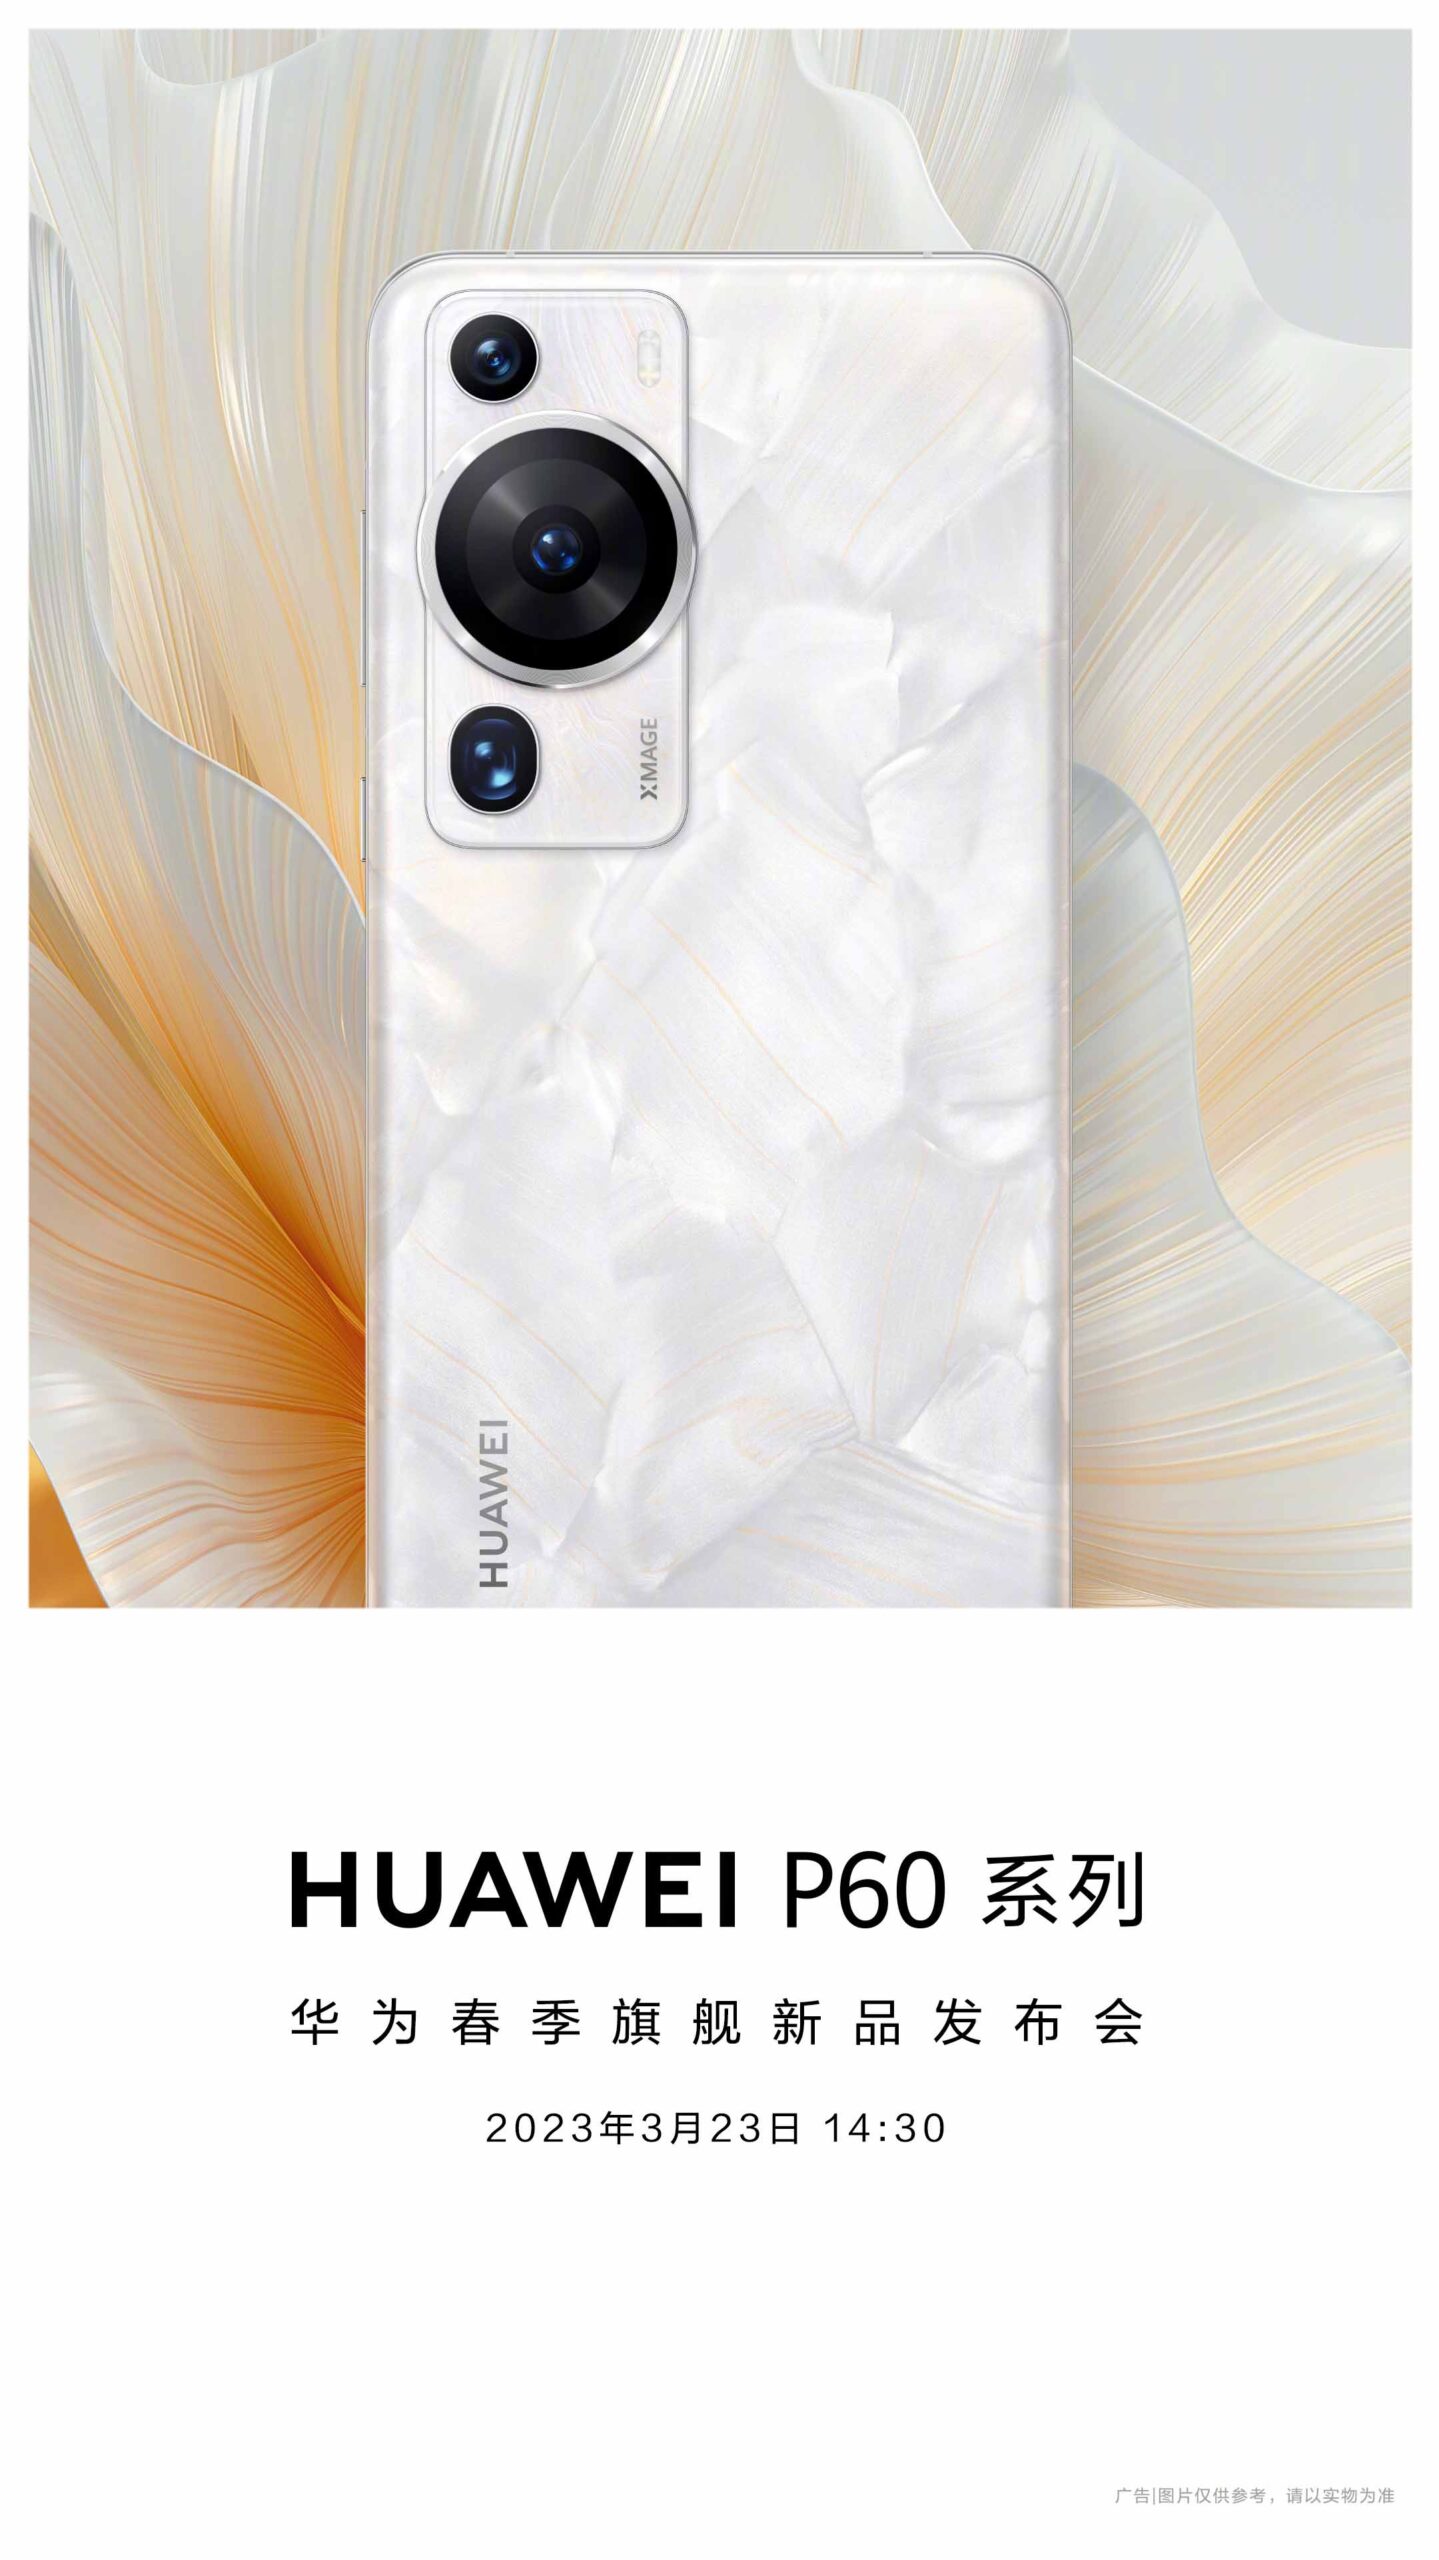 Huawei P60 series design